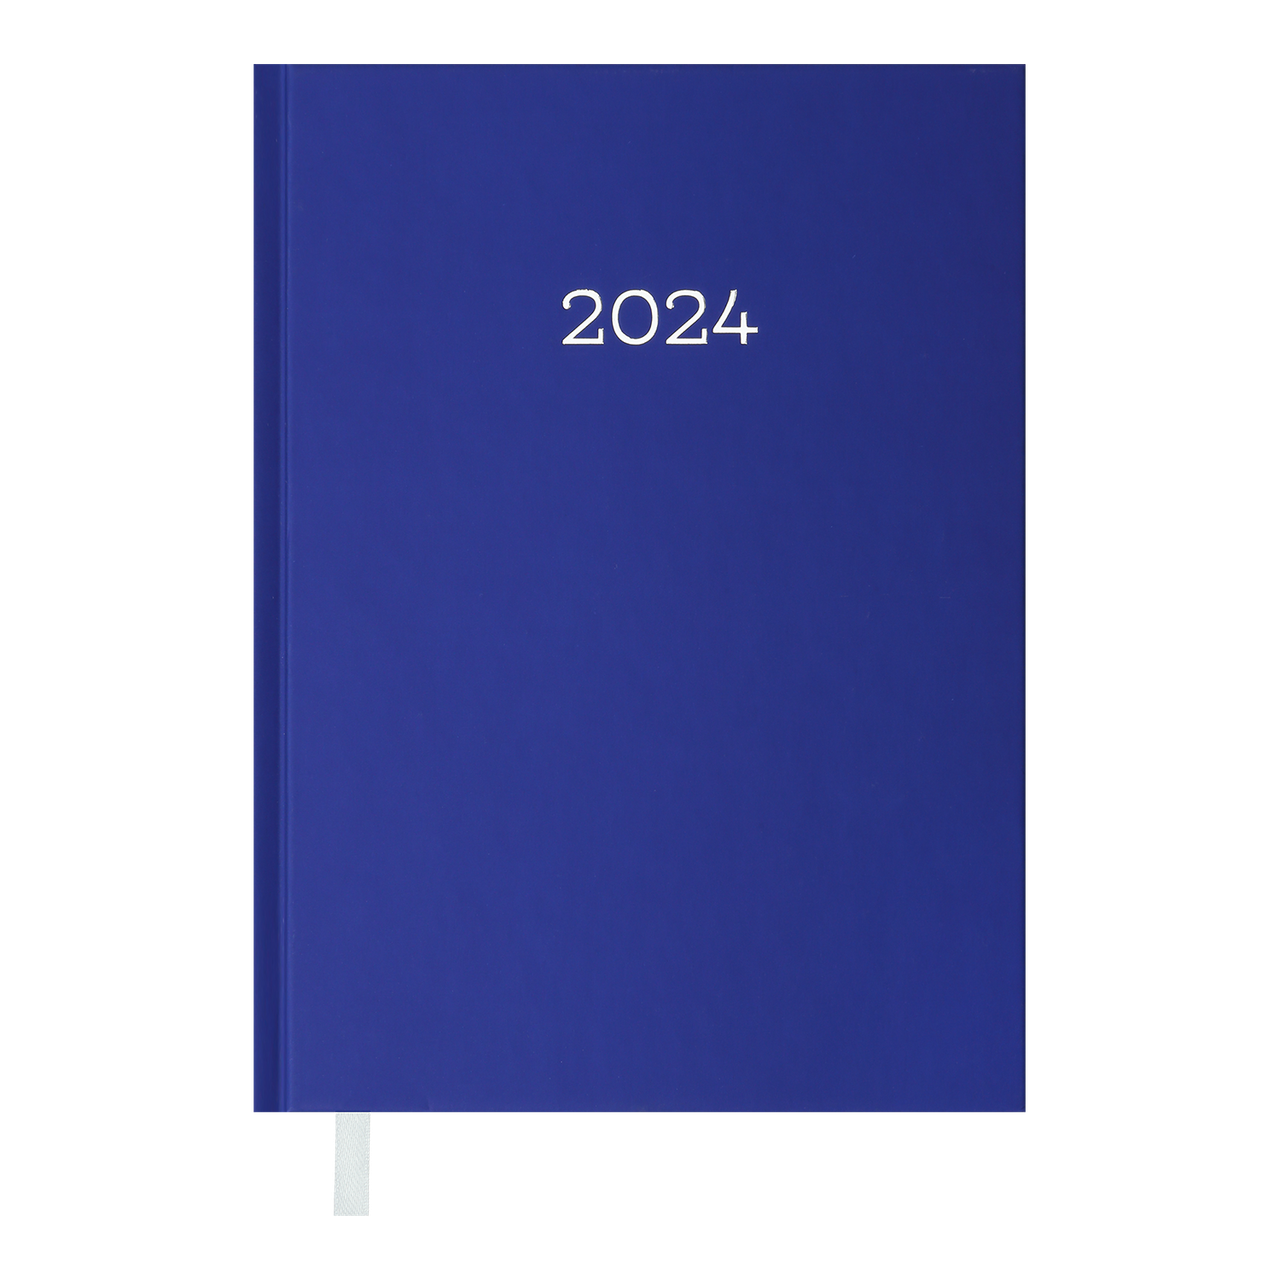 Щоденник датований 2024 MONOCHROME, A5, синій